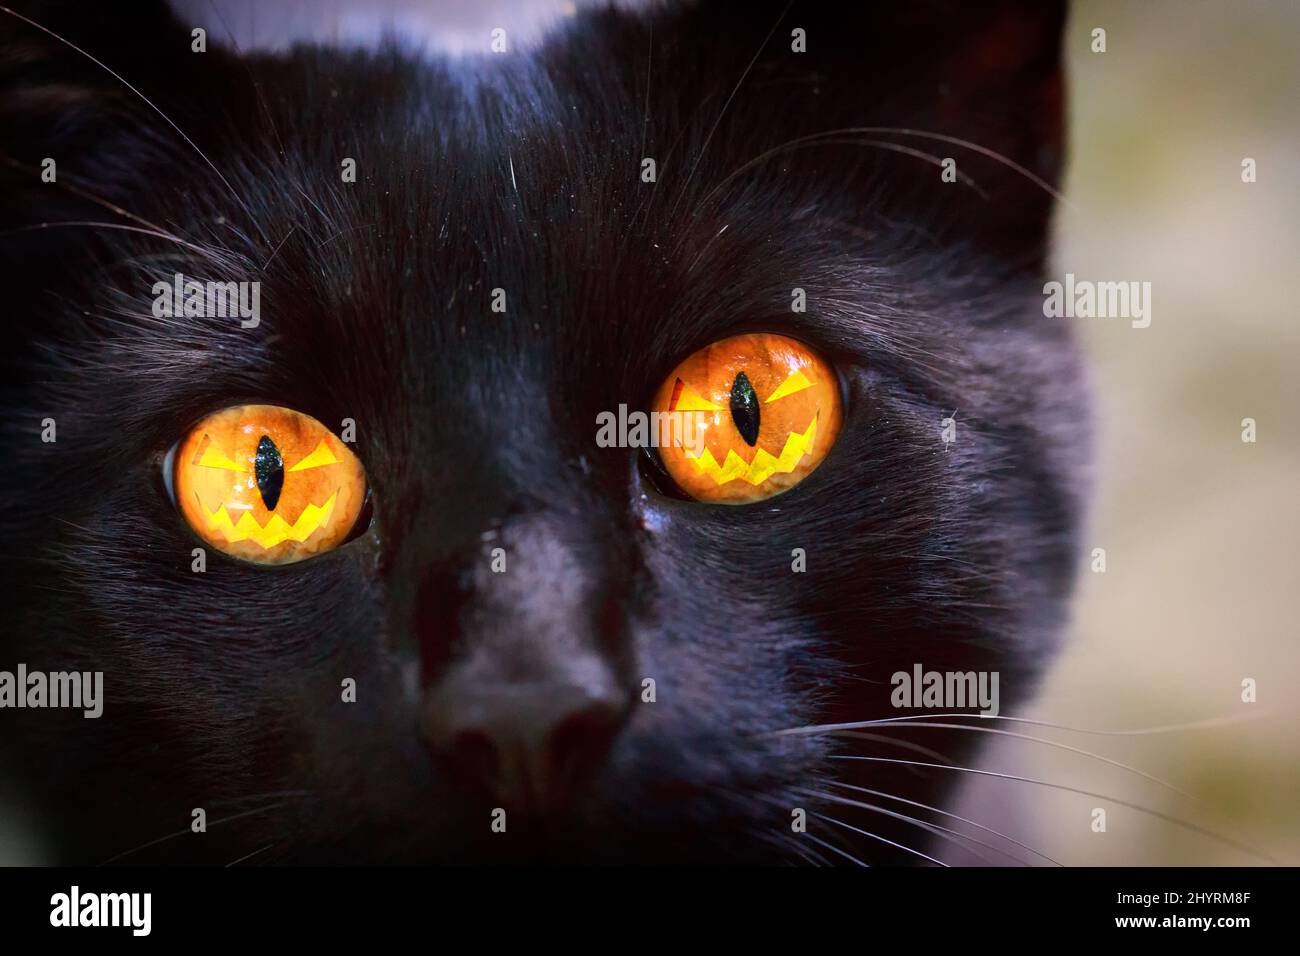 Halloween Kitty - Halloween Cat - Halloween Katze - Katze mit einem Halloween Kürbis in den Augen - CatEye, Cat eye, Katzenauge, Black Cat, schwarze Katze Foto Stock